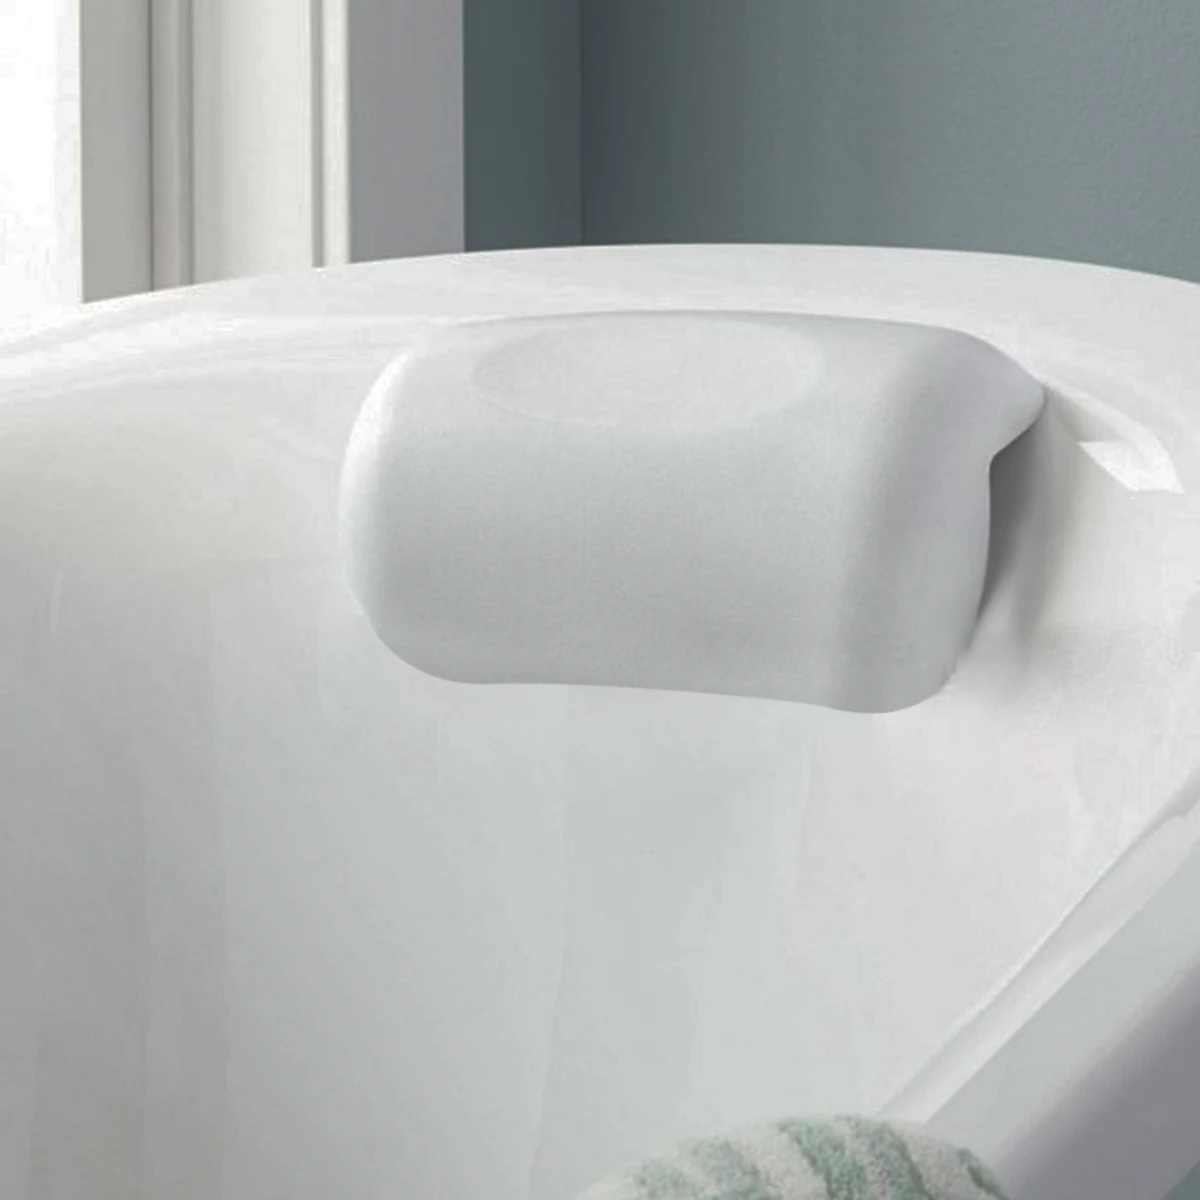 Белый PU водонепроницаемый эргономичный дизайн подушка для ванной 26x14cm-1